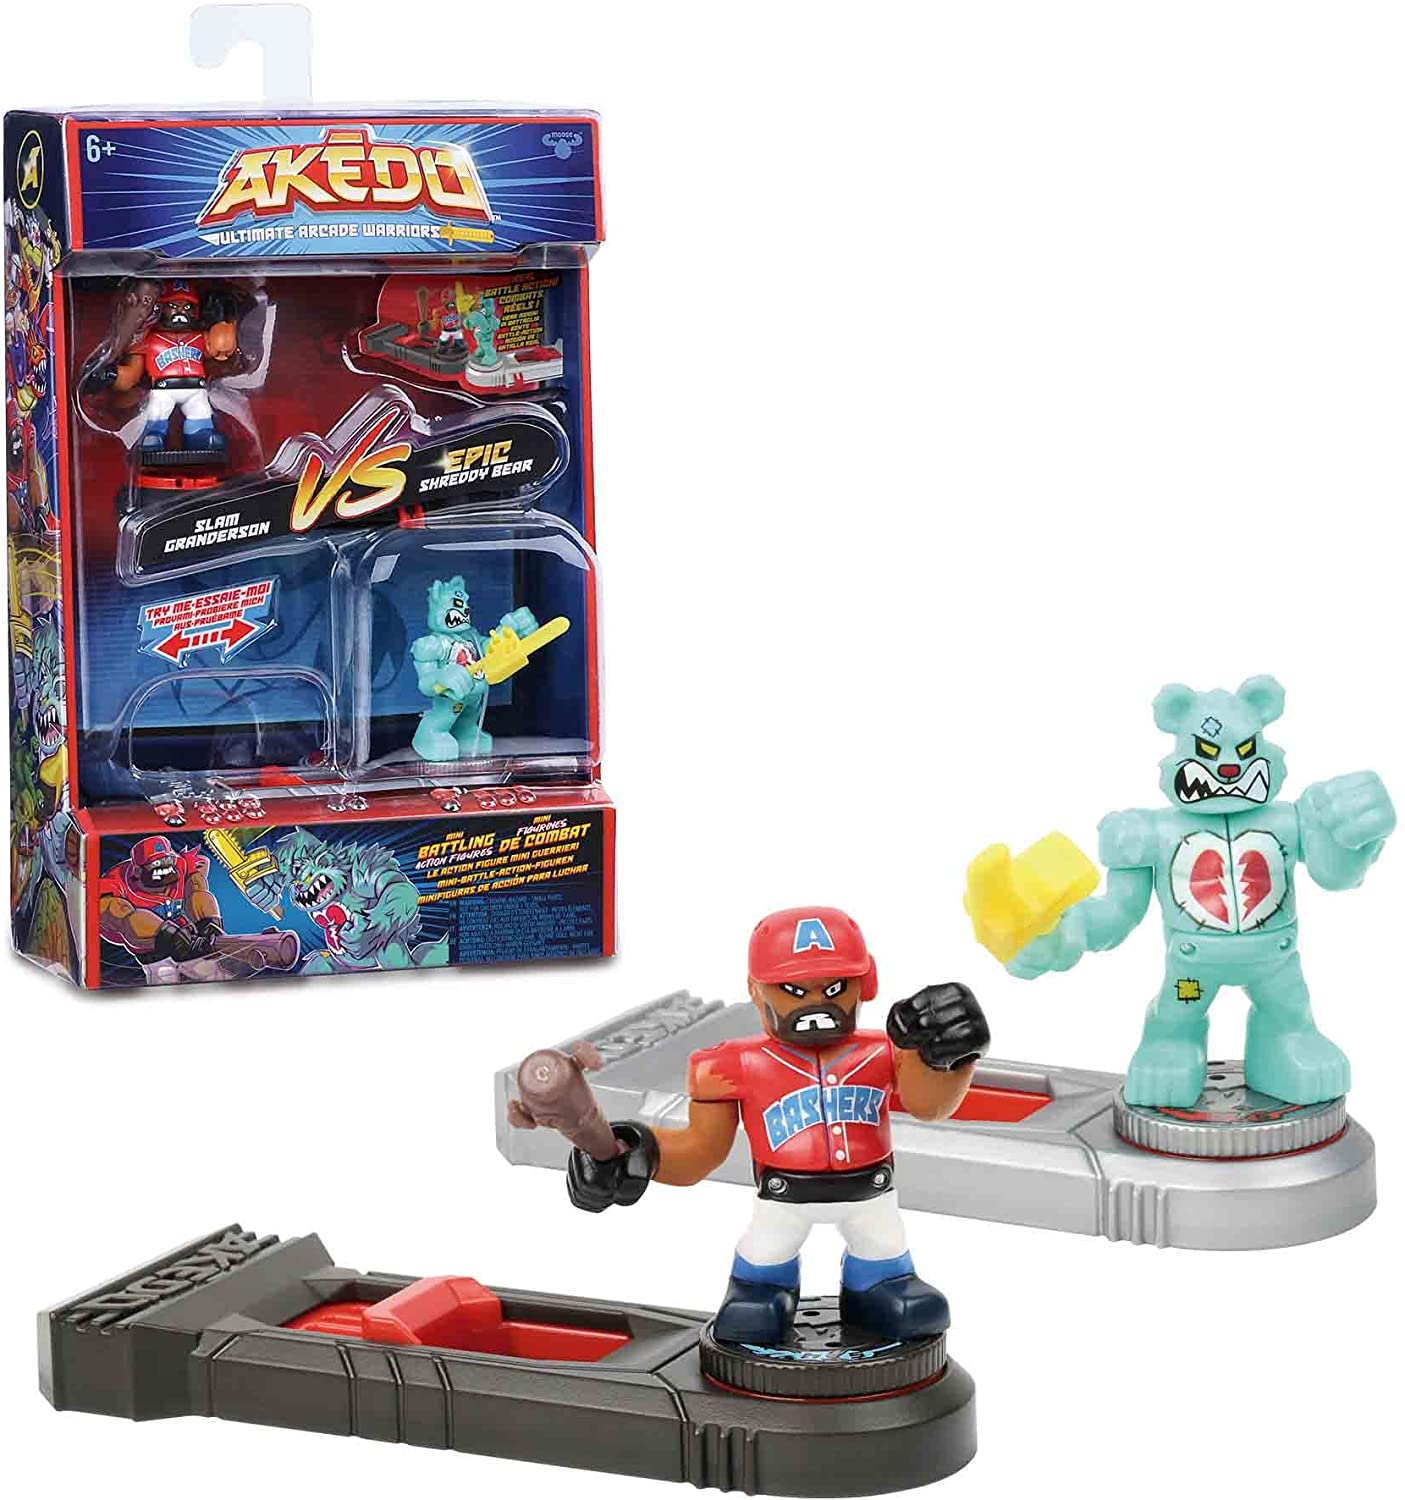 AKEDO - Versus Pack, figure di Arcade, con due bambole e 2 controlli per  maneggiarli e giocare a casa, 4 confezioni diverse da c